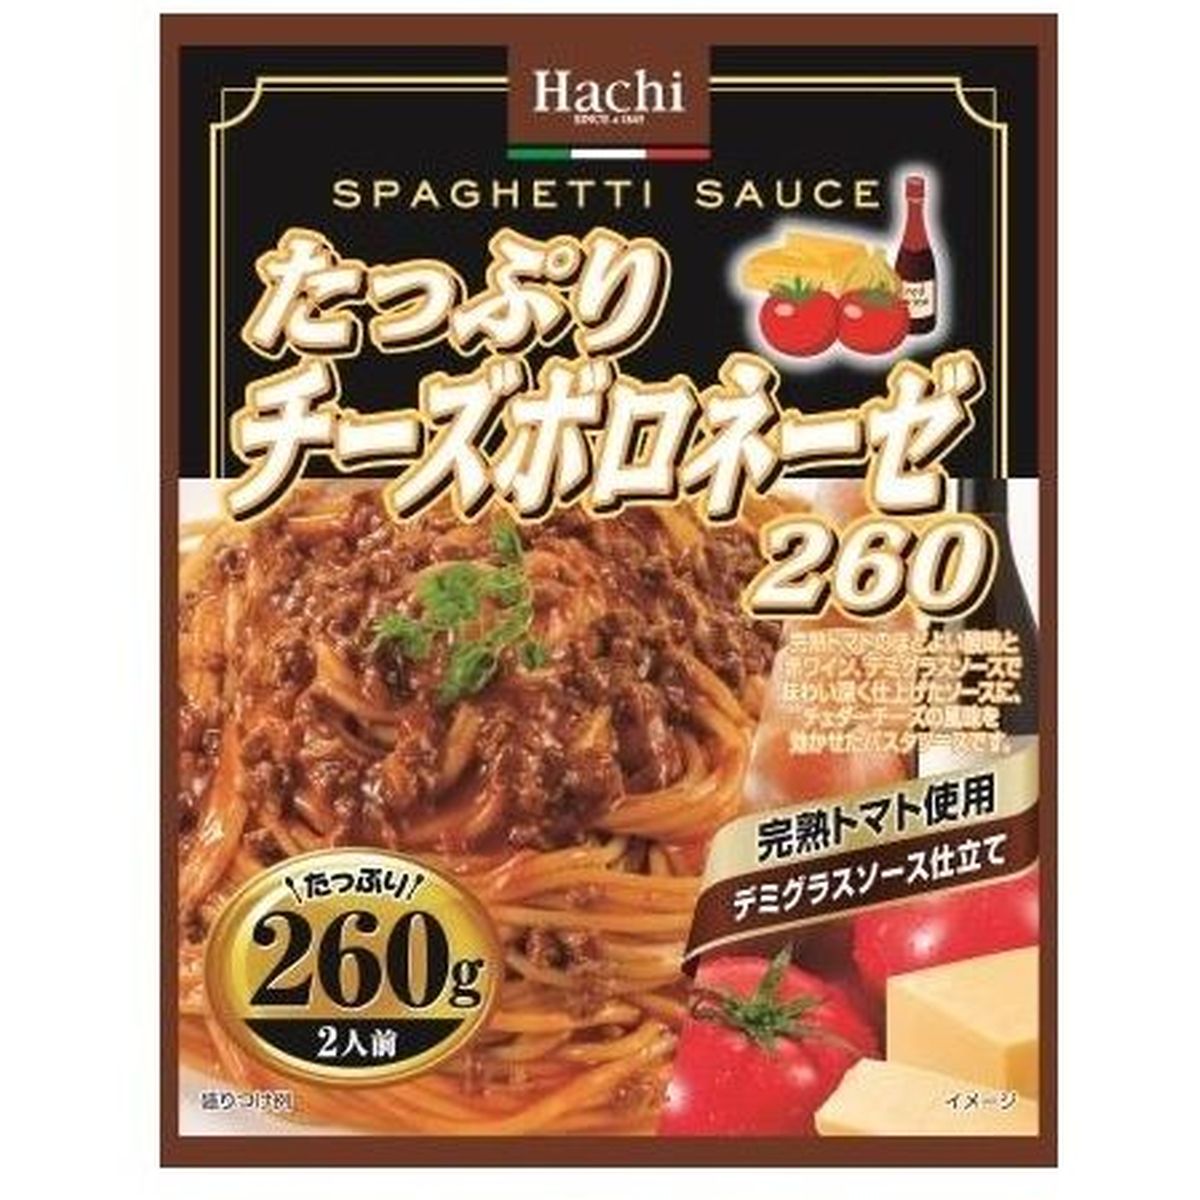 【24個入リ】ハチ食品 タップリチーズボロネーゼ 260g